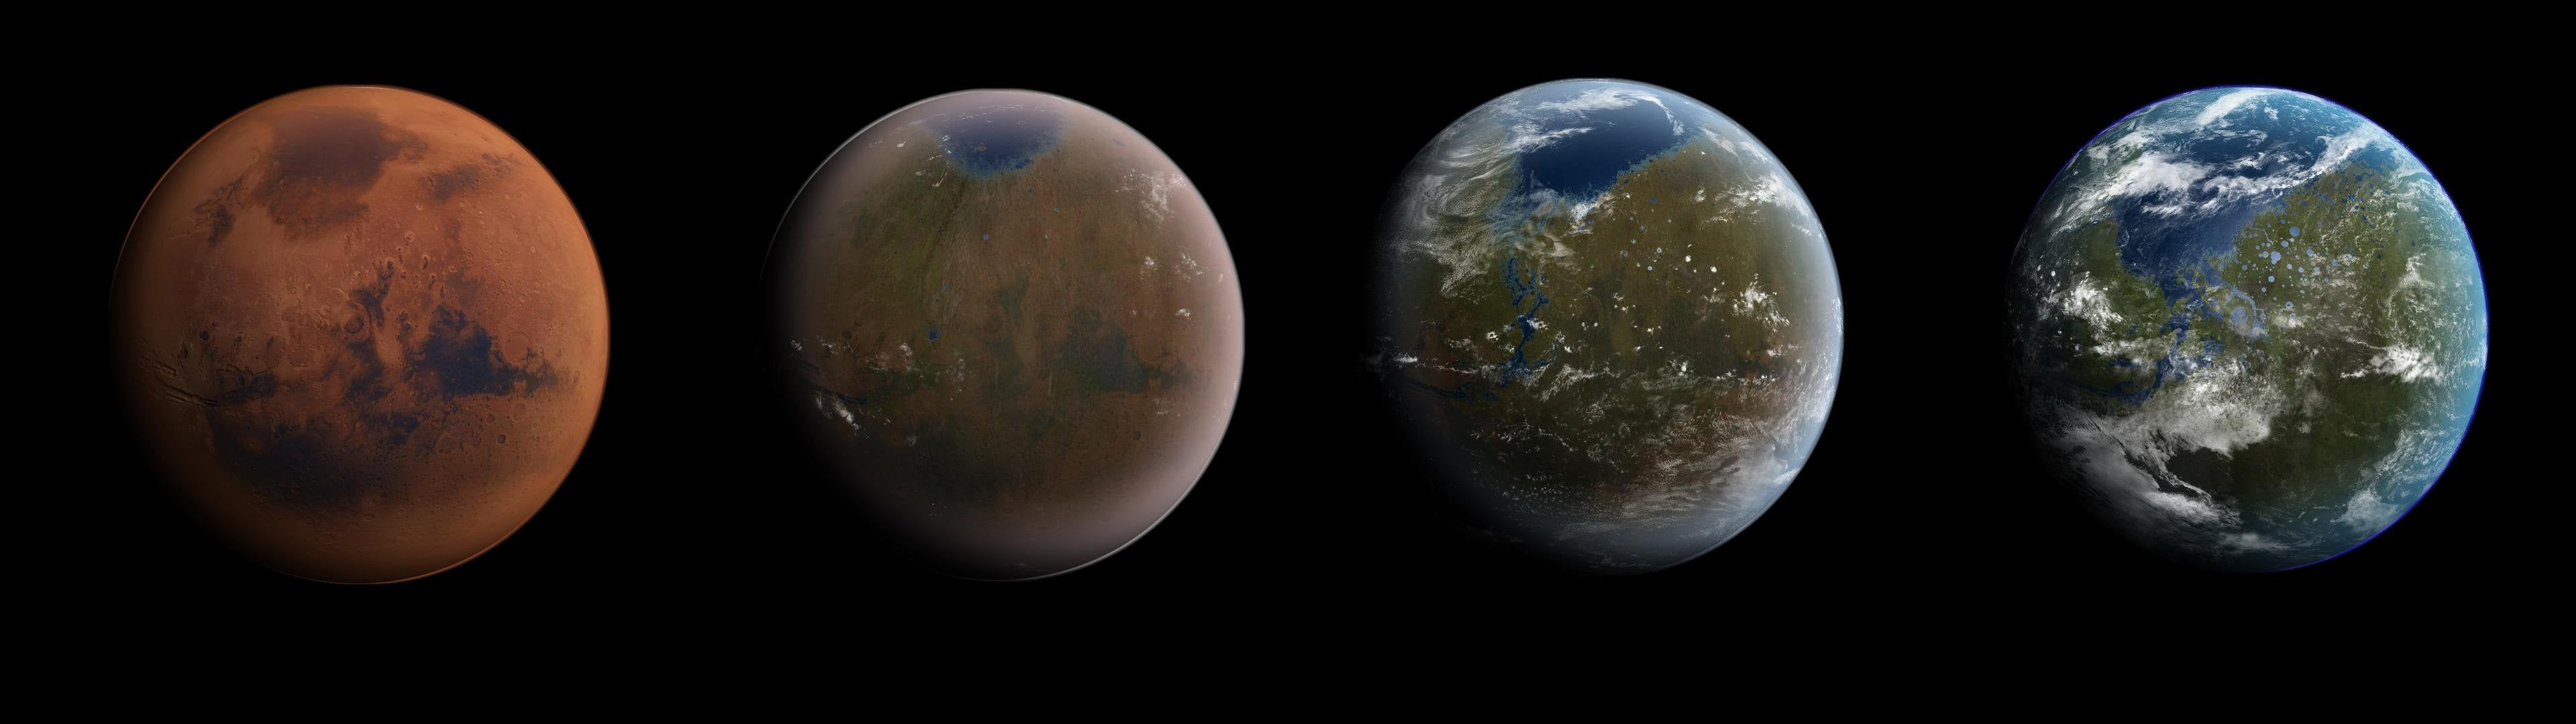 Mars Terraforming Process [3840x1080]